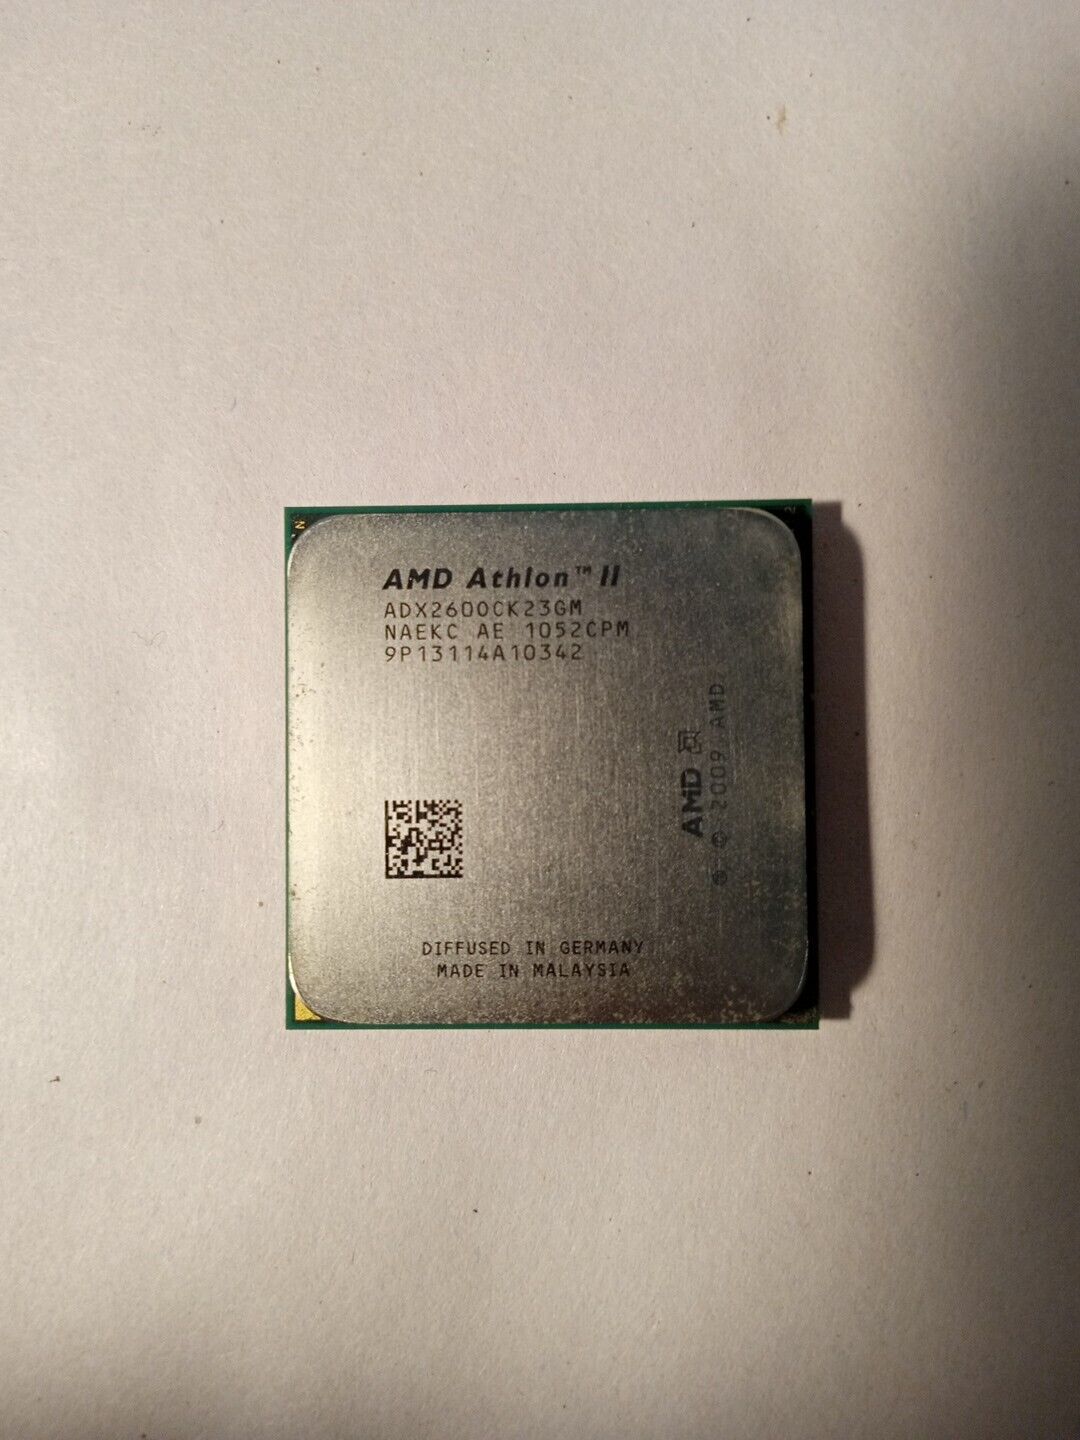 AMD Athlon II X2 260, 3.2GHz 533MHz Socket AM2+/AM3 Dual Core Processor